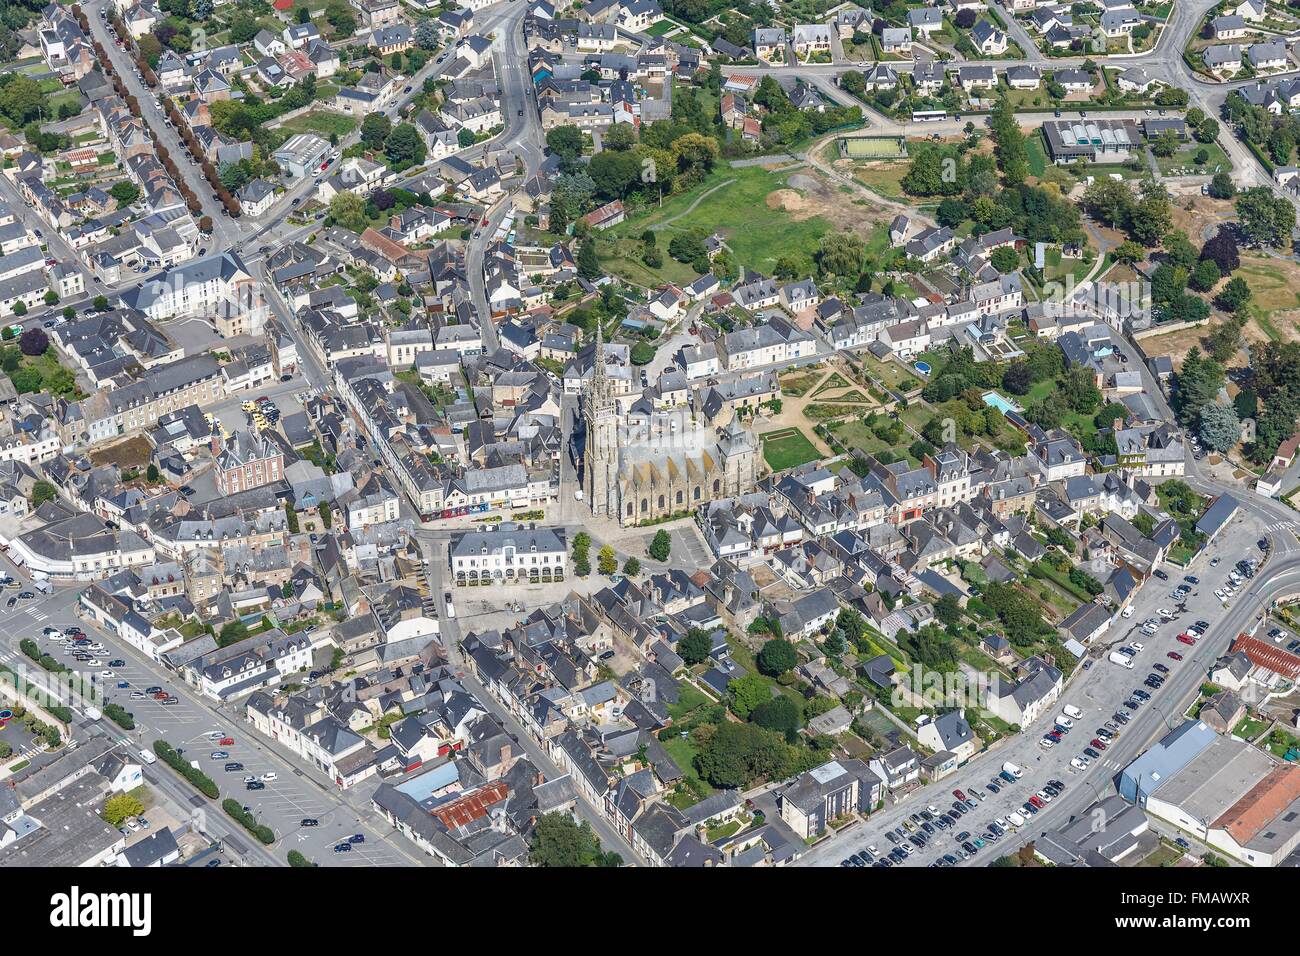 France, Ille et Vilaine, La Guerche de Bretagne, the town (aerial view) Stock Photo